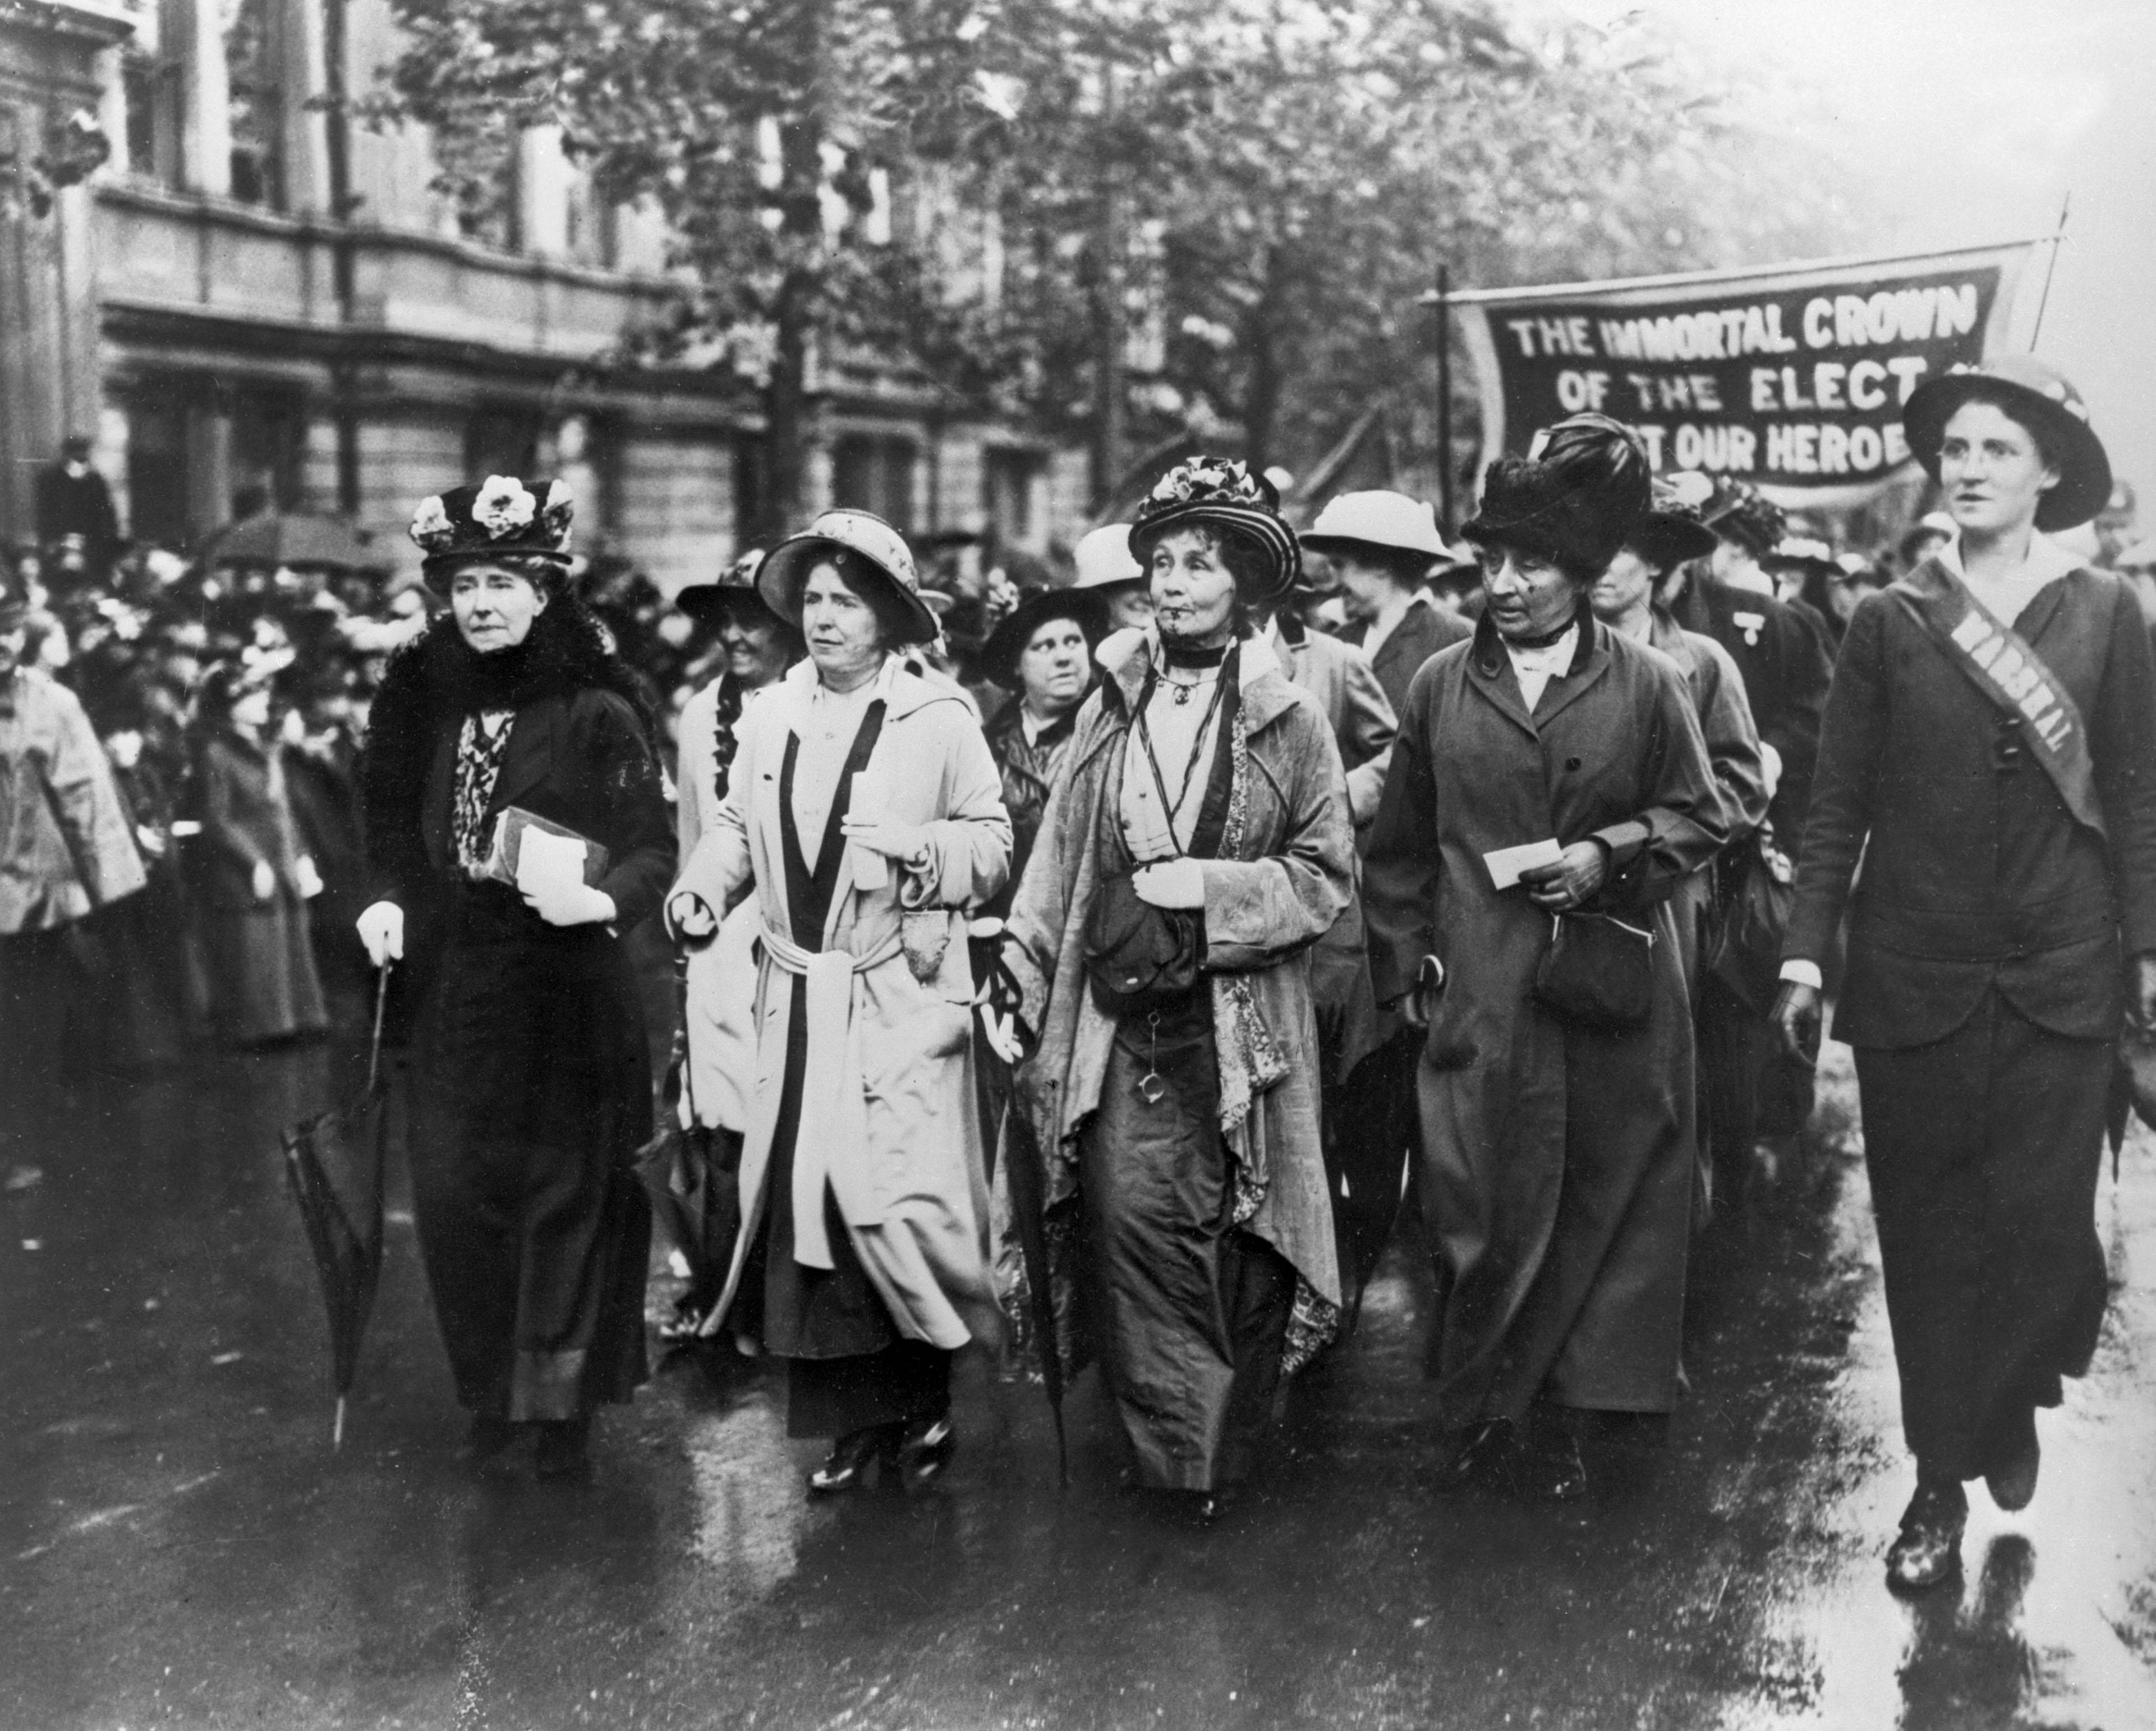 Mouvement des suffragettes en Grande Bretagne : 1913, Emmeline Pankhurst (1858-1928) et ses deux filles Christabel et Sylvia Pankhurst lors d une manifestation dans les rues de Londres. !AUFNAHMEDATUM GESCHTZT! PUBLICATIONxINxGERxSUIxAUTxHUNxONLY FARA05454

Mouvement the Suffragettes en Grande Brittany 1913 Emmeline  1858 1928 Et SES Deux Filles Christabel Et Sylvia  lors D Une Manifestation Dans Les rues de Londres date estimated PUBLICATIONxINxGERxSUIxAUTxHUNxONLY FARA05454